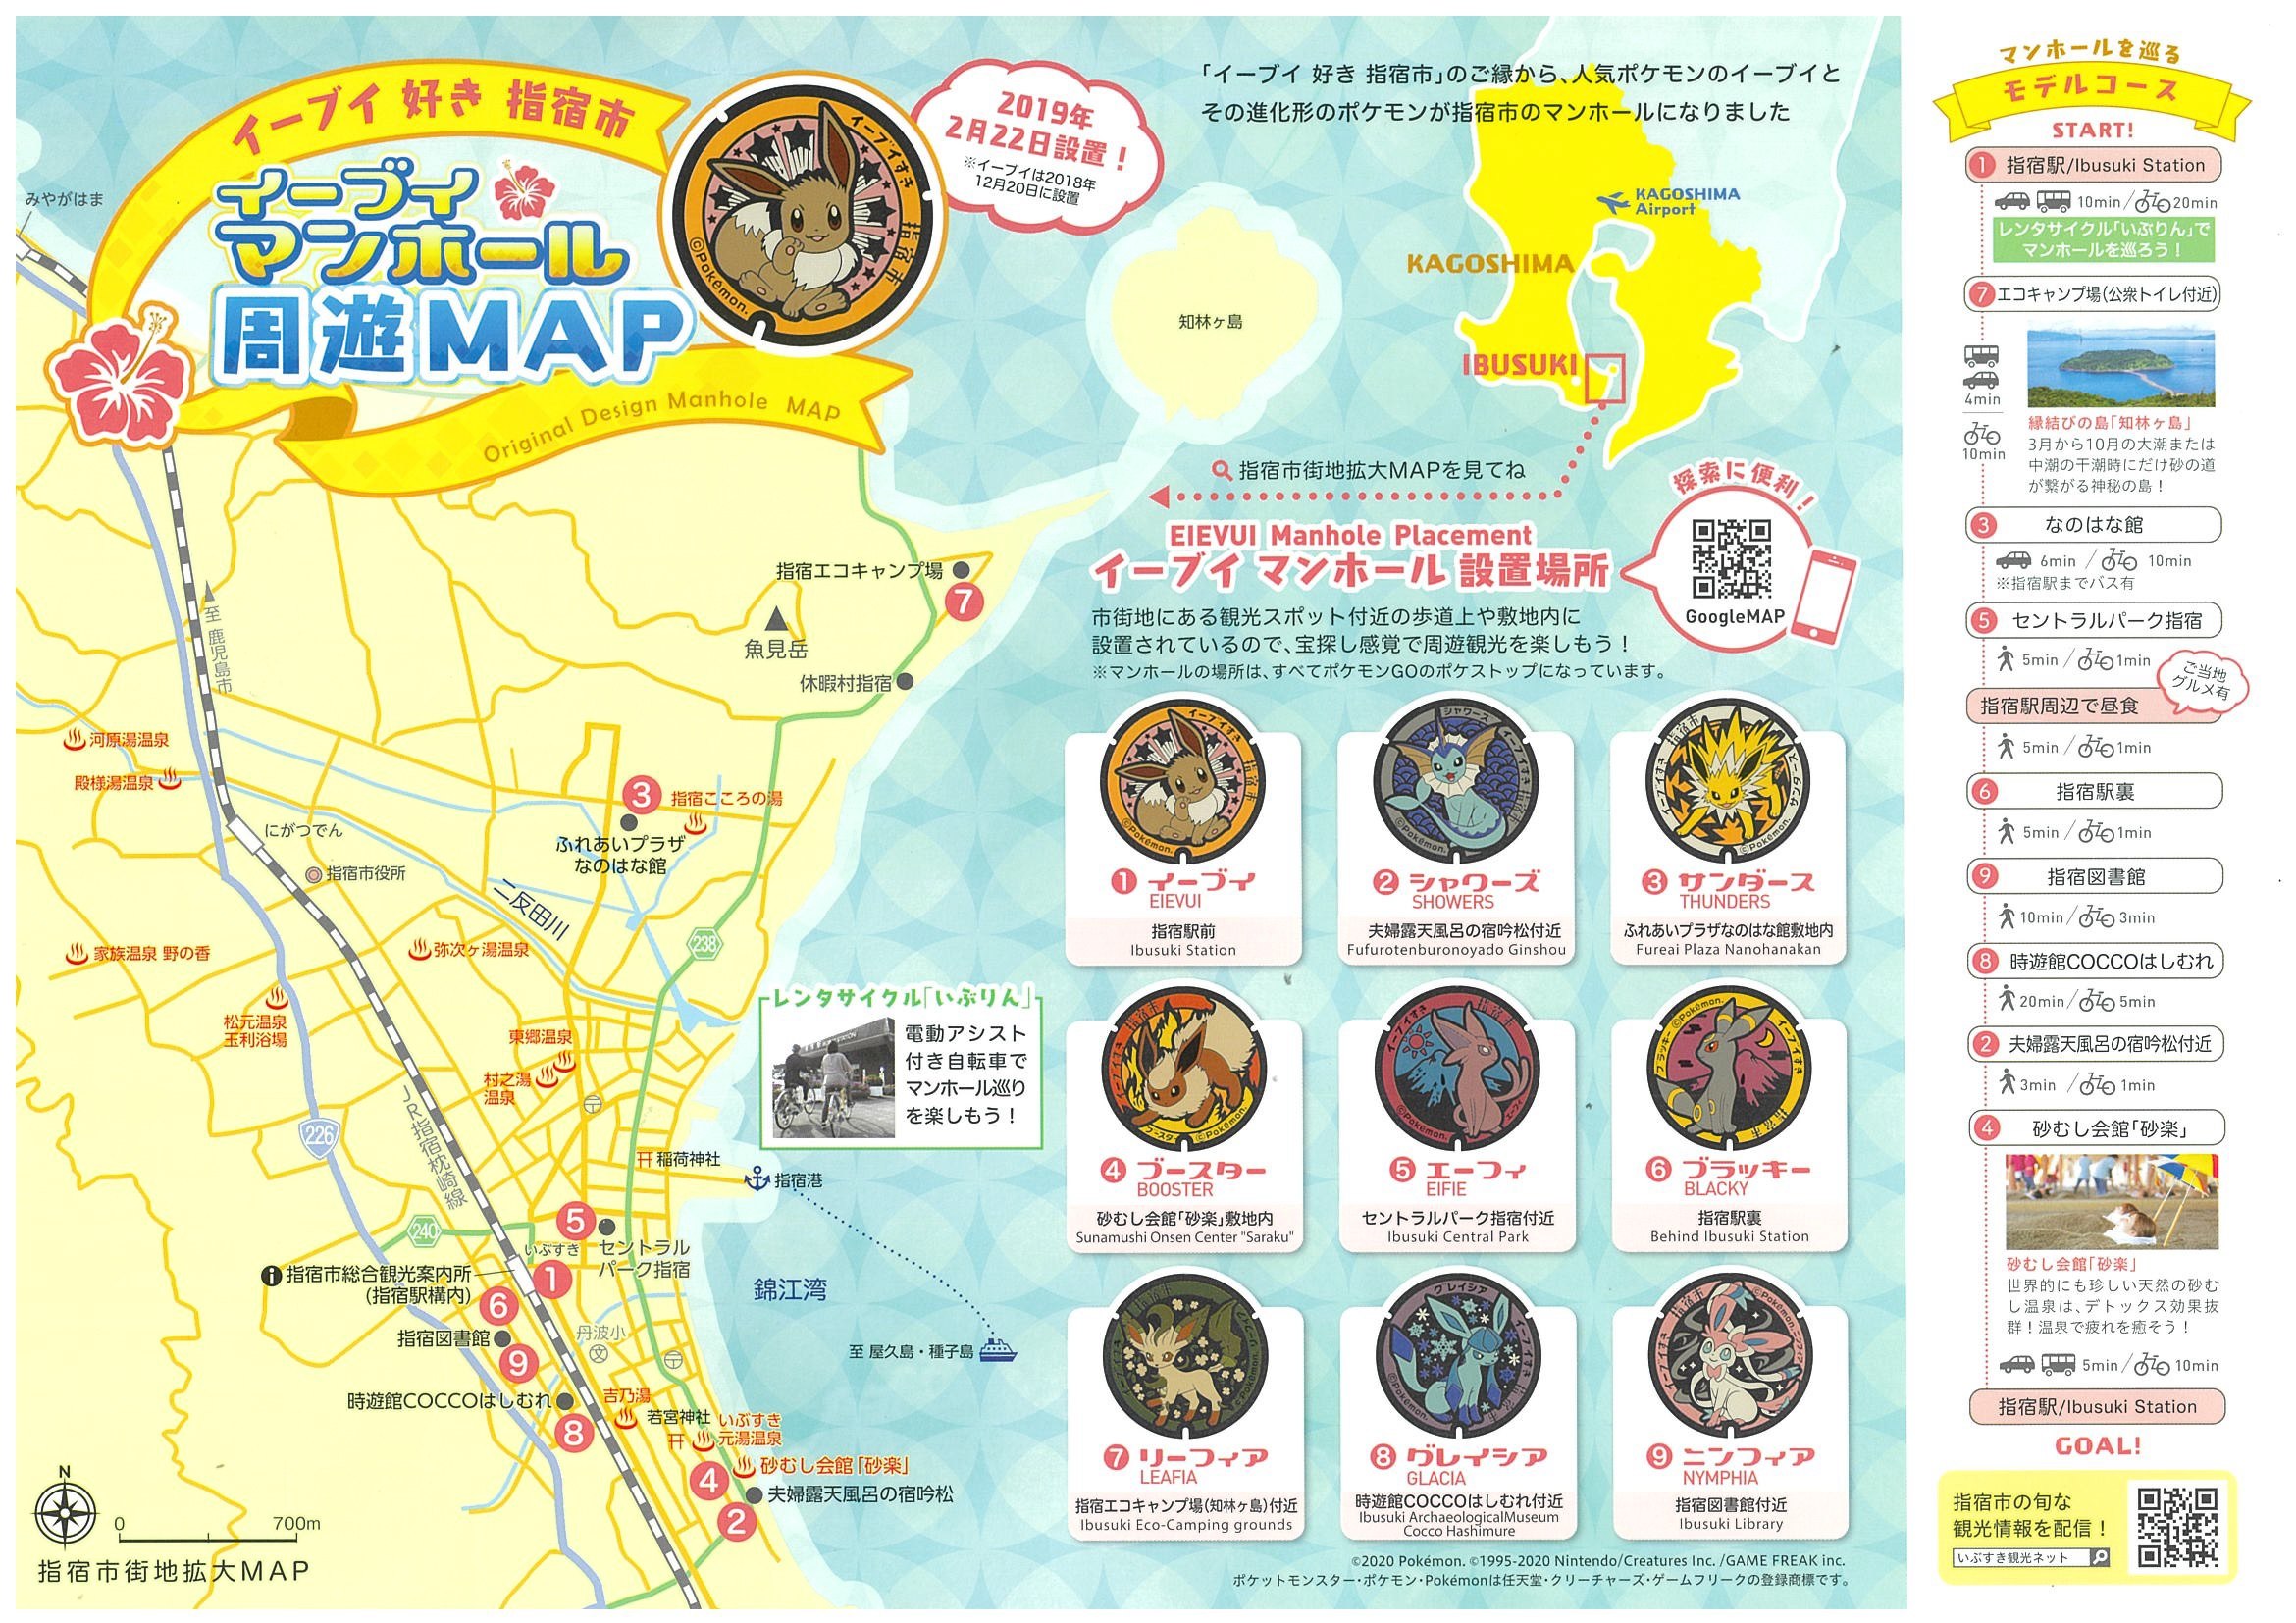 イーブイマンホール周遊MAP.jpg